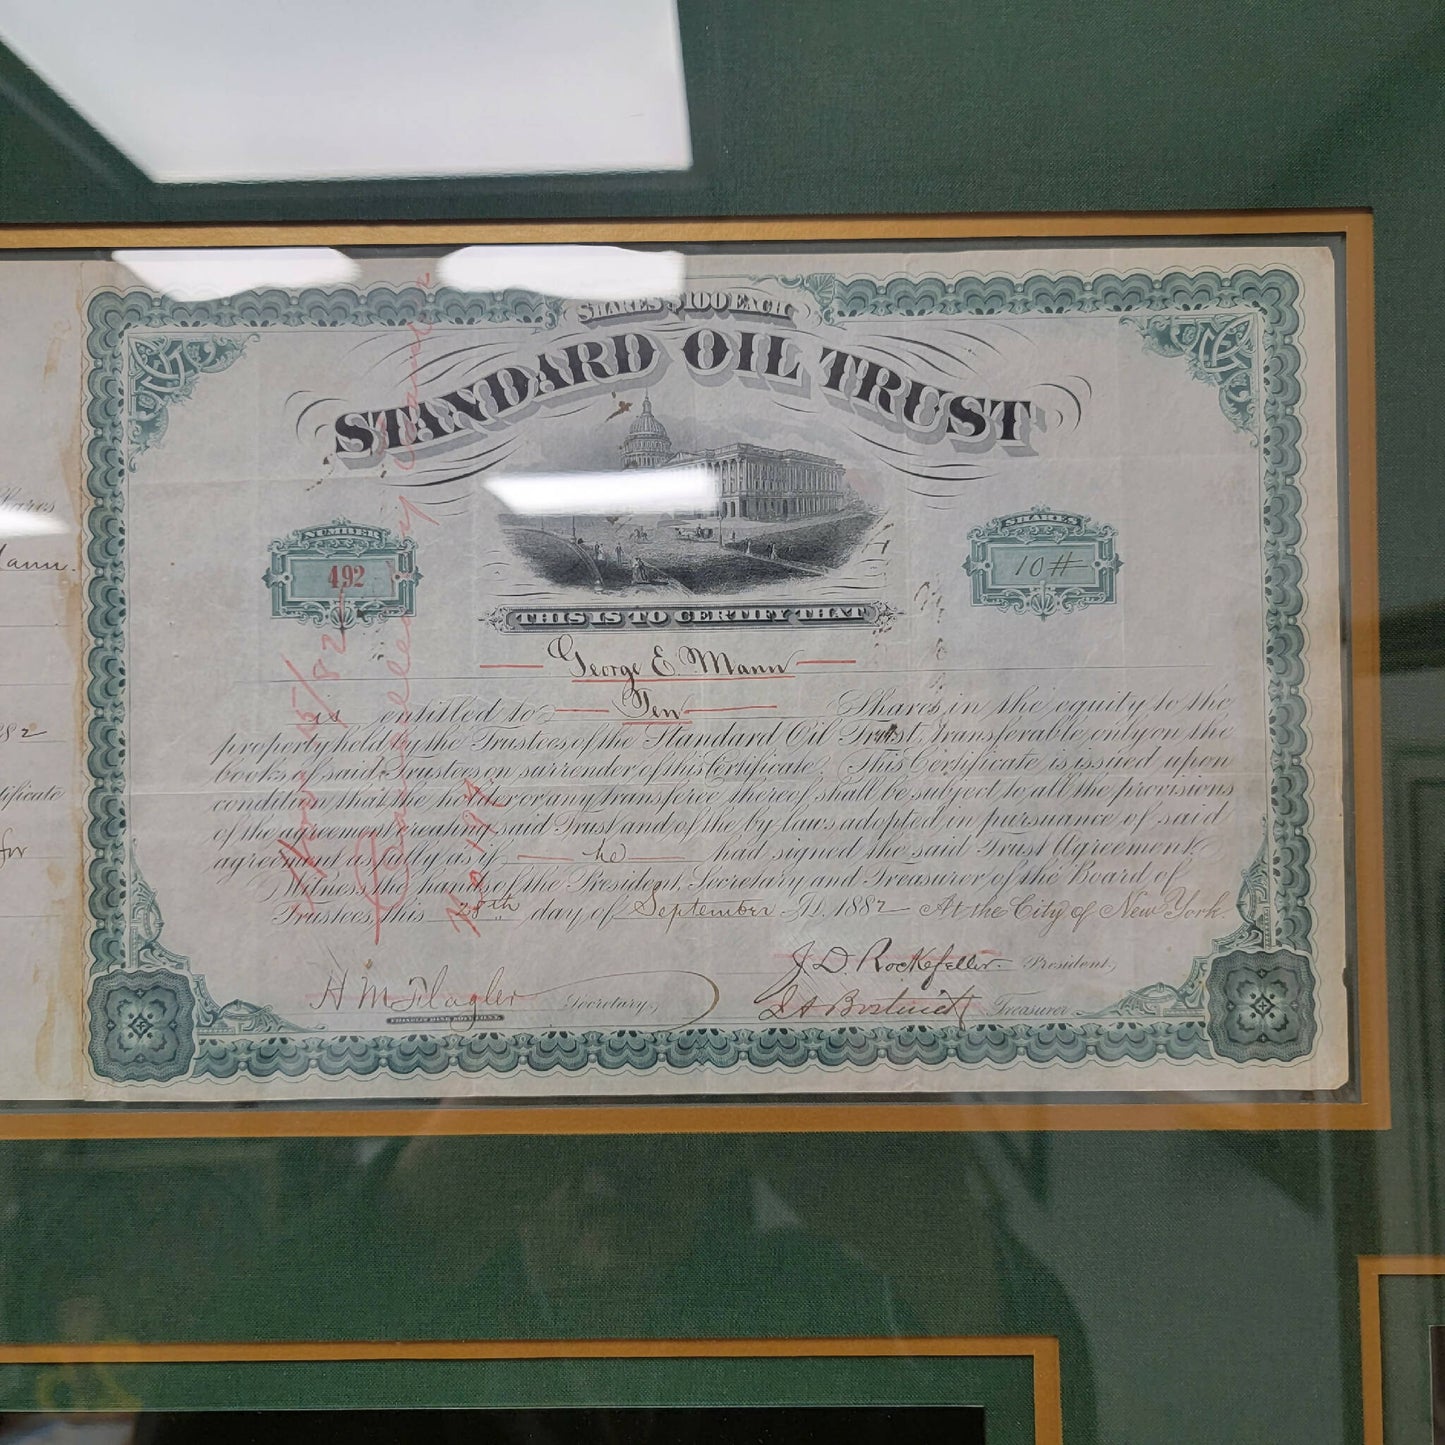 Standard Oil Trust Certificate signed by John D. Rockefeller and Henry Flagler